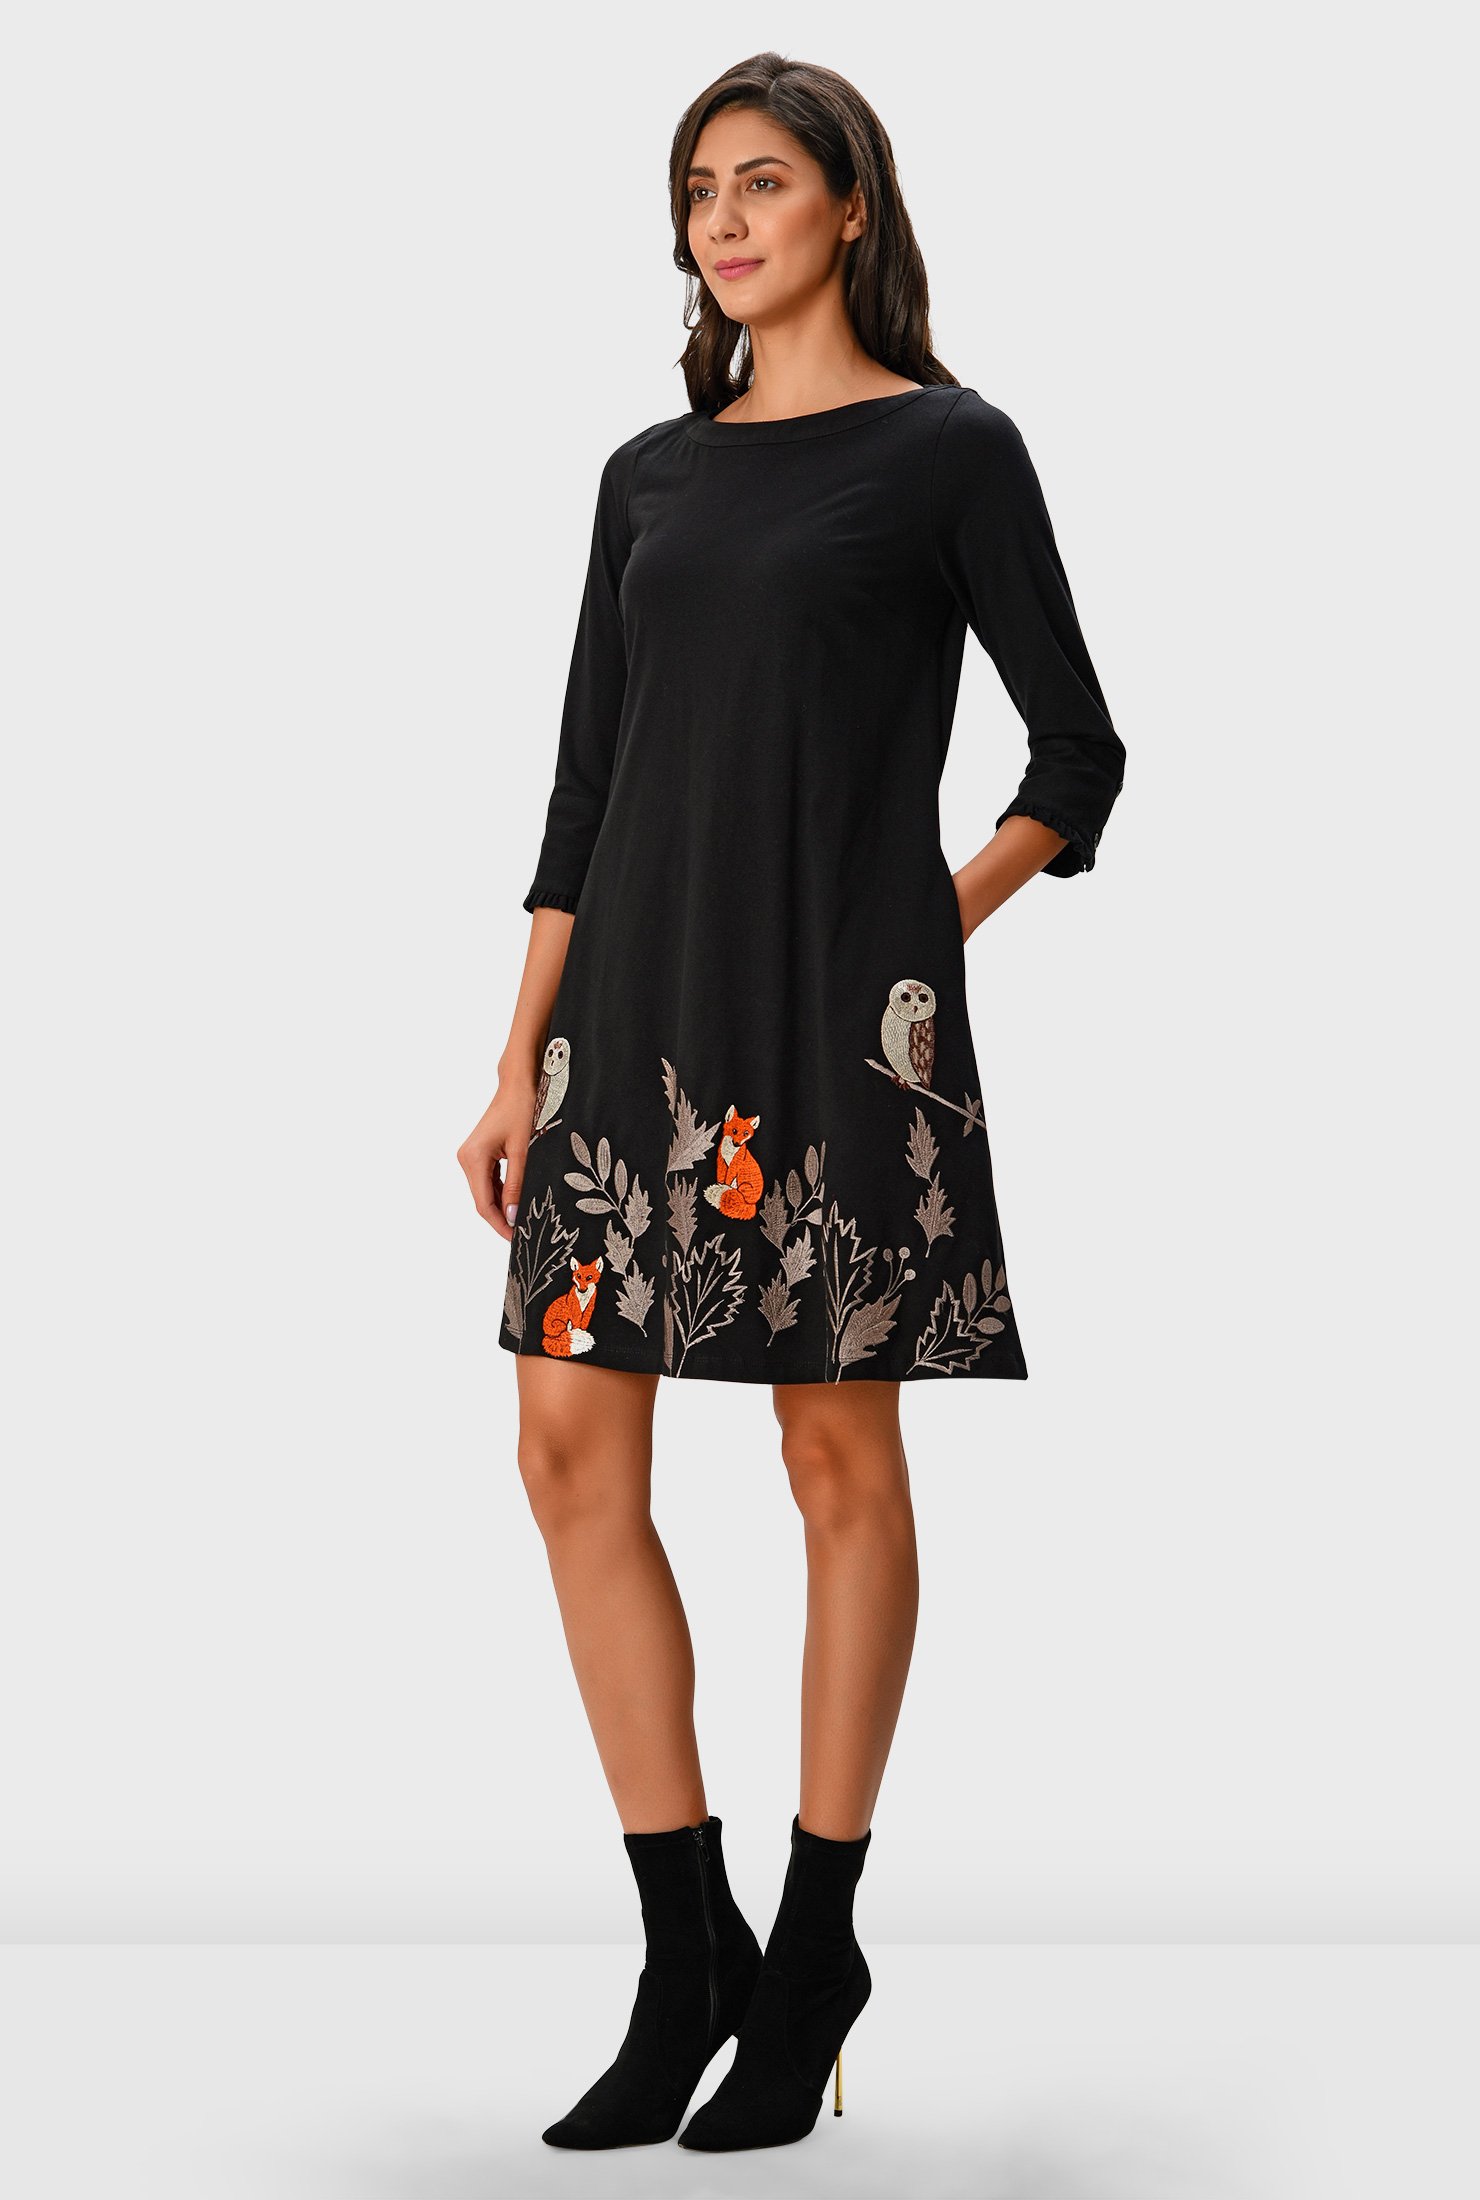 discount 67% Orange L Blanco e nero casual dress WOMEN FASHION Dresses Casual dress Embroidery 